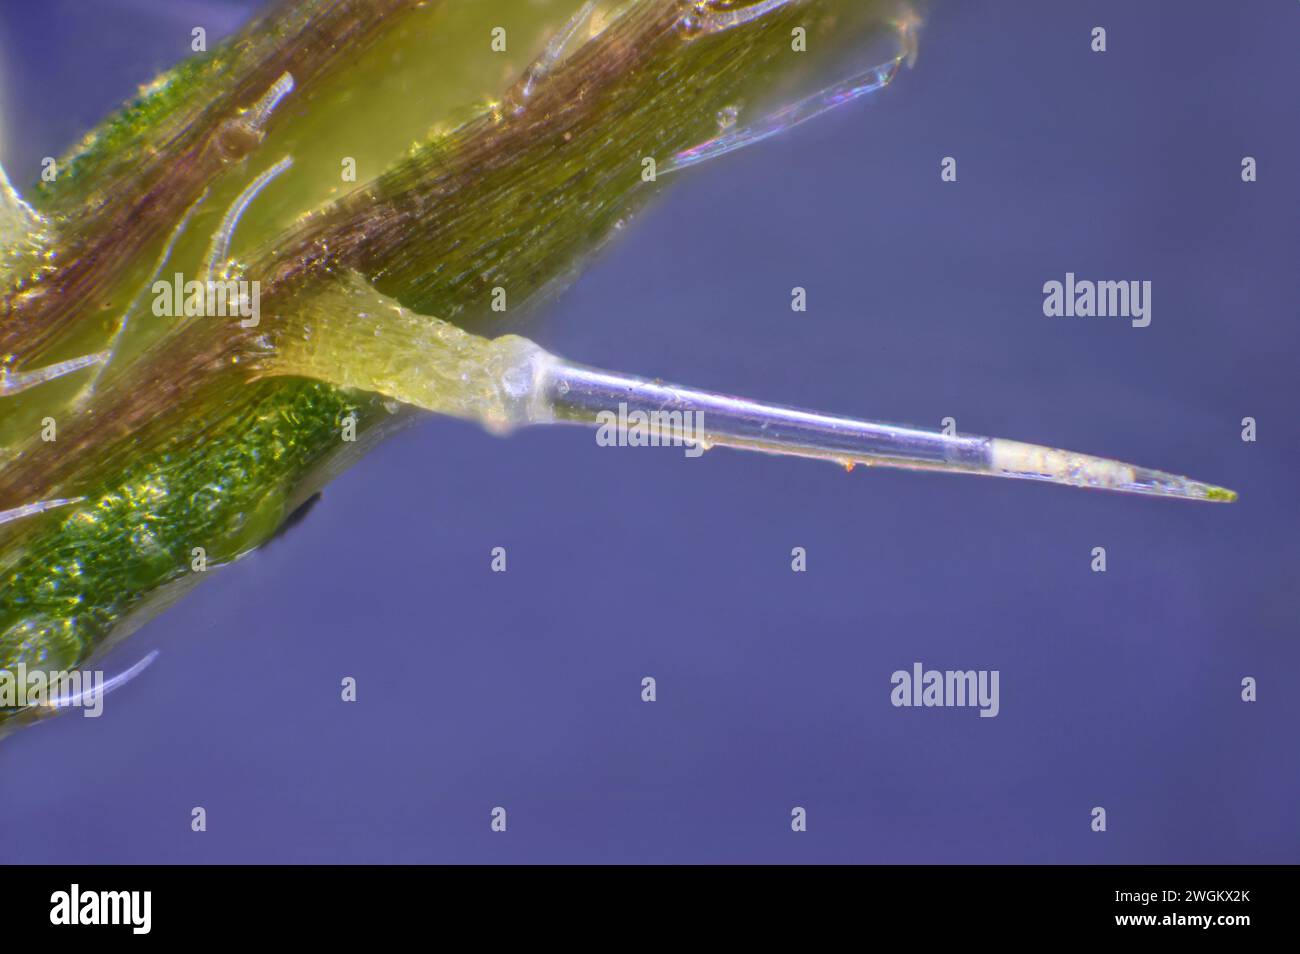 common nettle, stinging nettle, nettle leaf, nettle, stinger (Urtica dioica), Stinging hair, macro shot, Germany, Mecklenburg-Western Pomerania Stock Photo